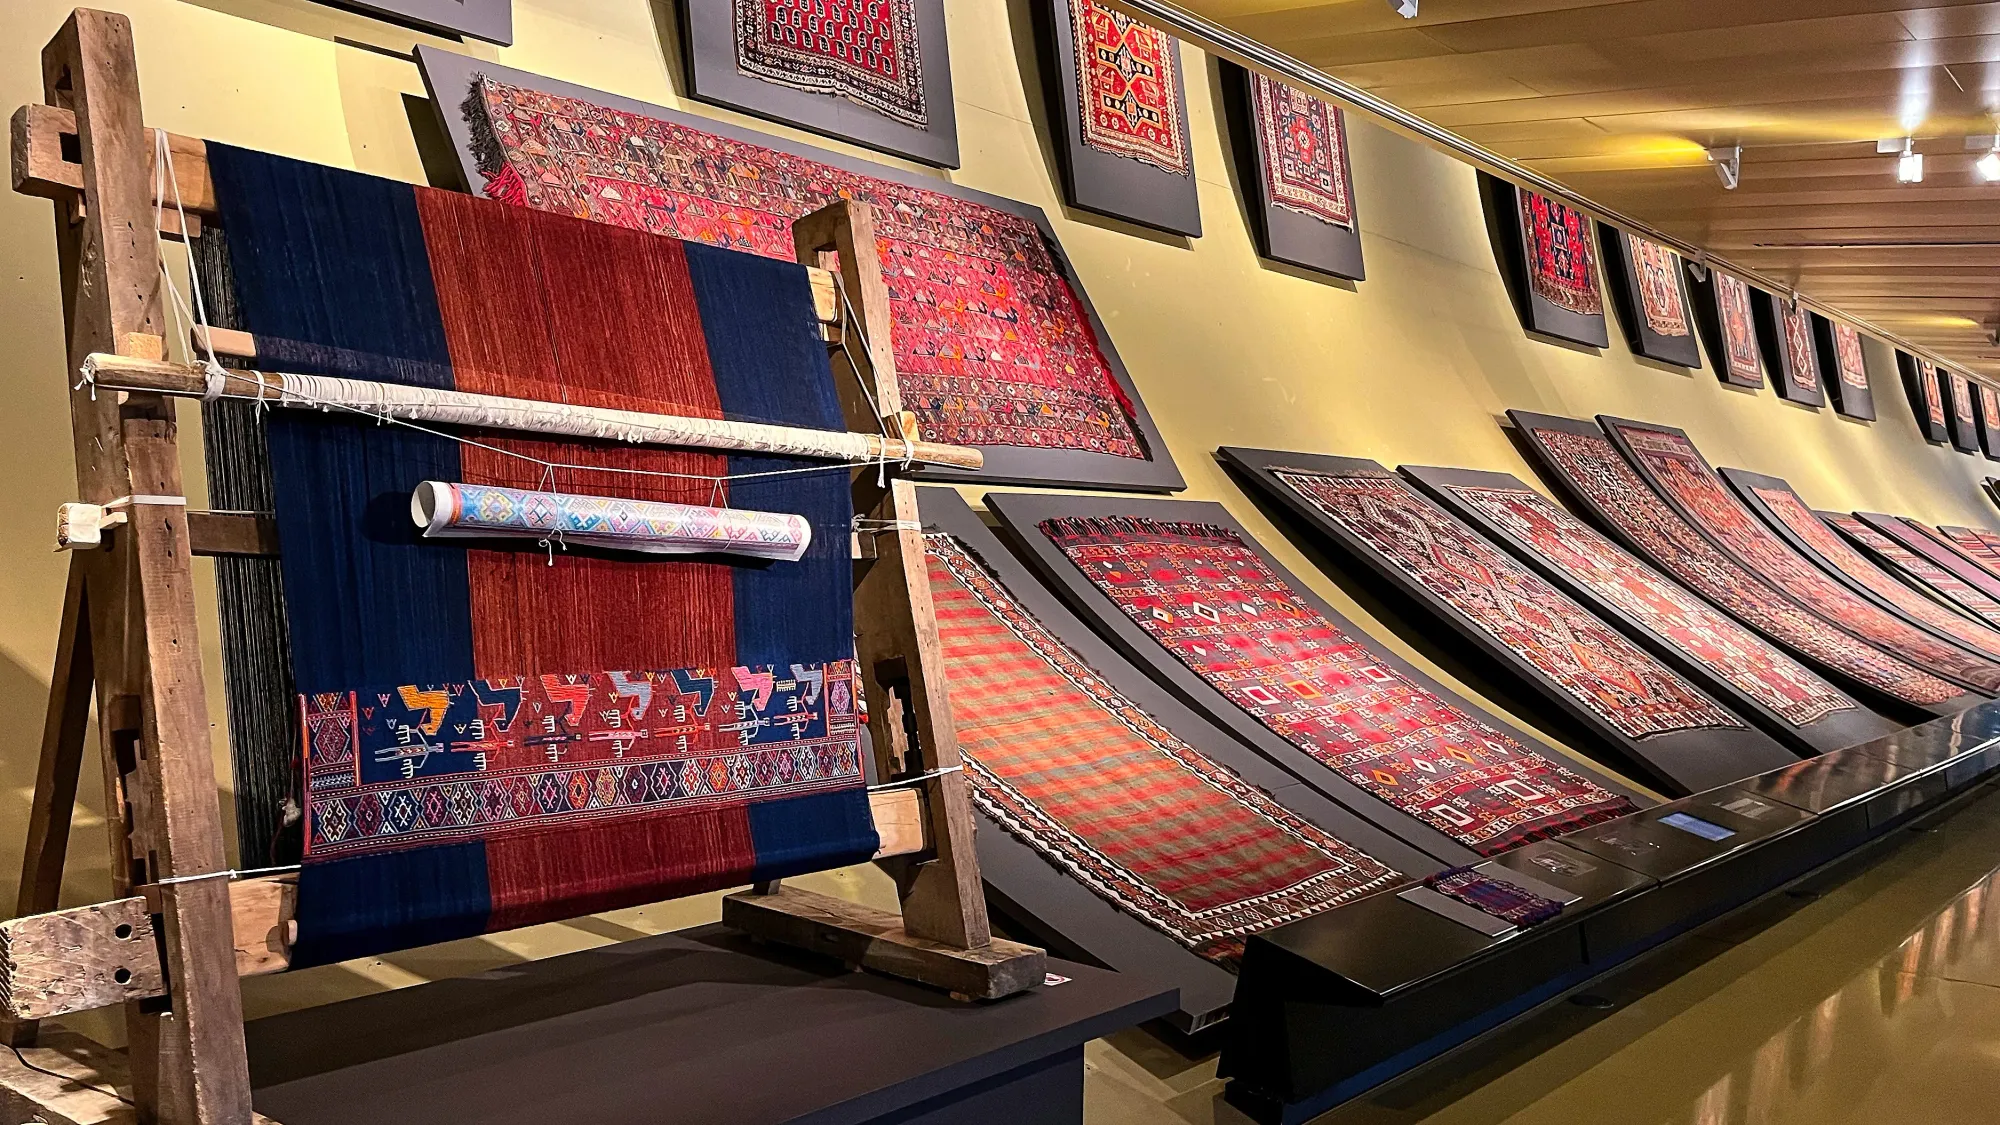 A loom in progress alongside a wall full of mounted woven carpets